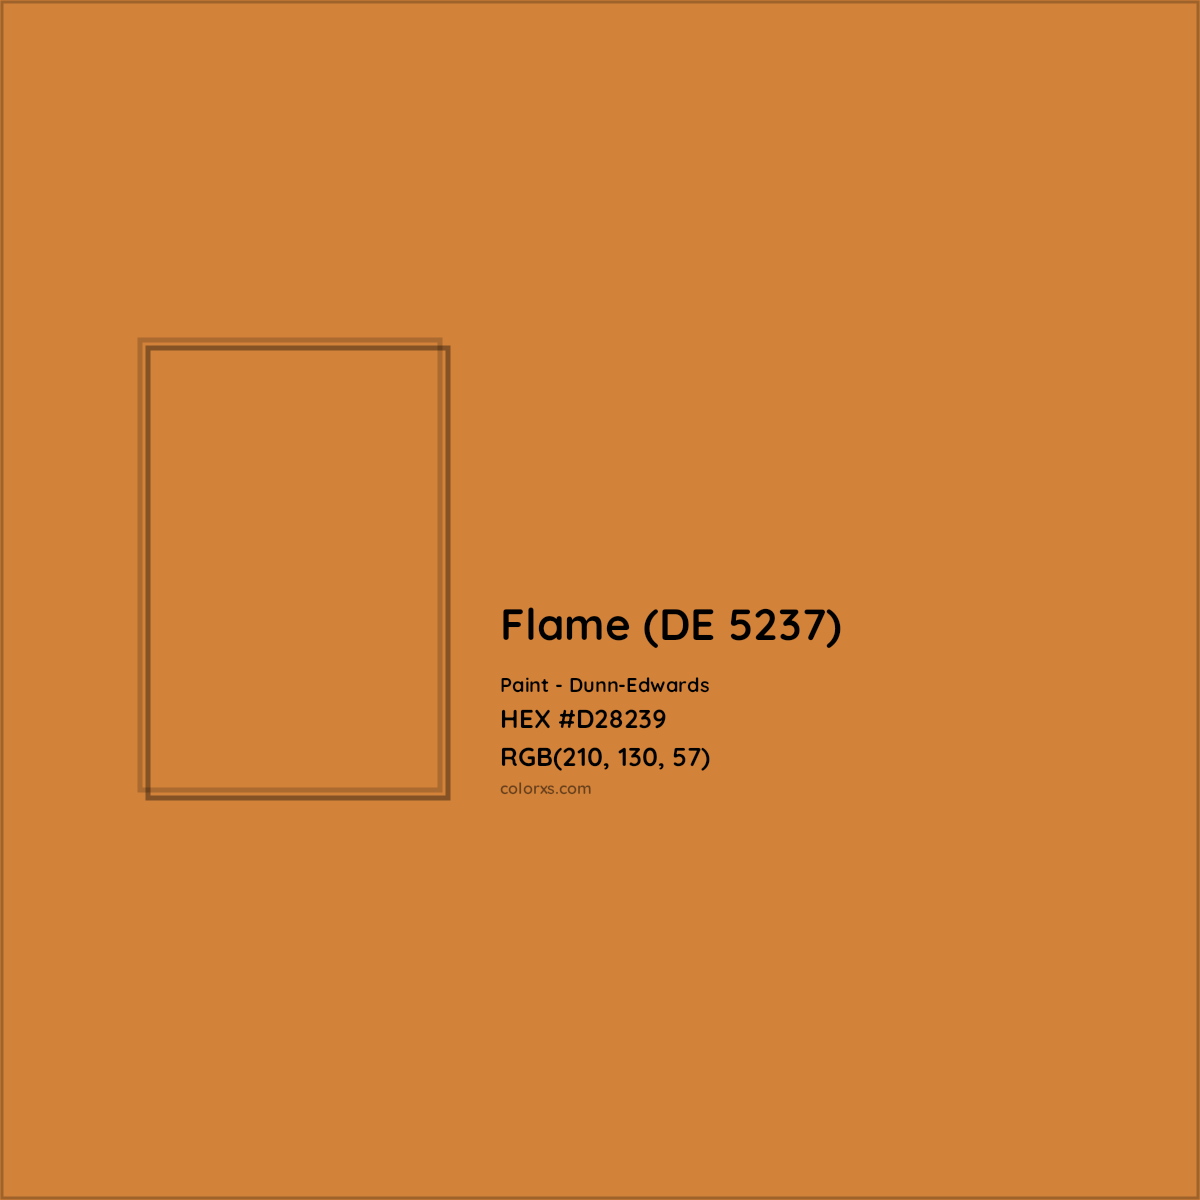 HEX #D28239 Flame (DE 5237) Paint Dunn-Edwards - Color Code